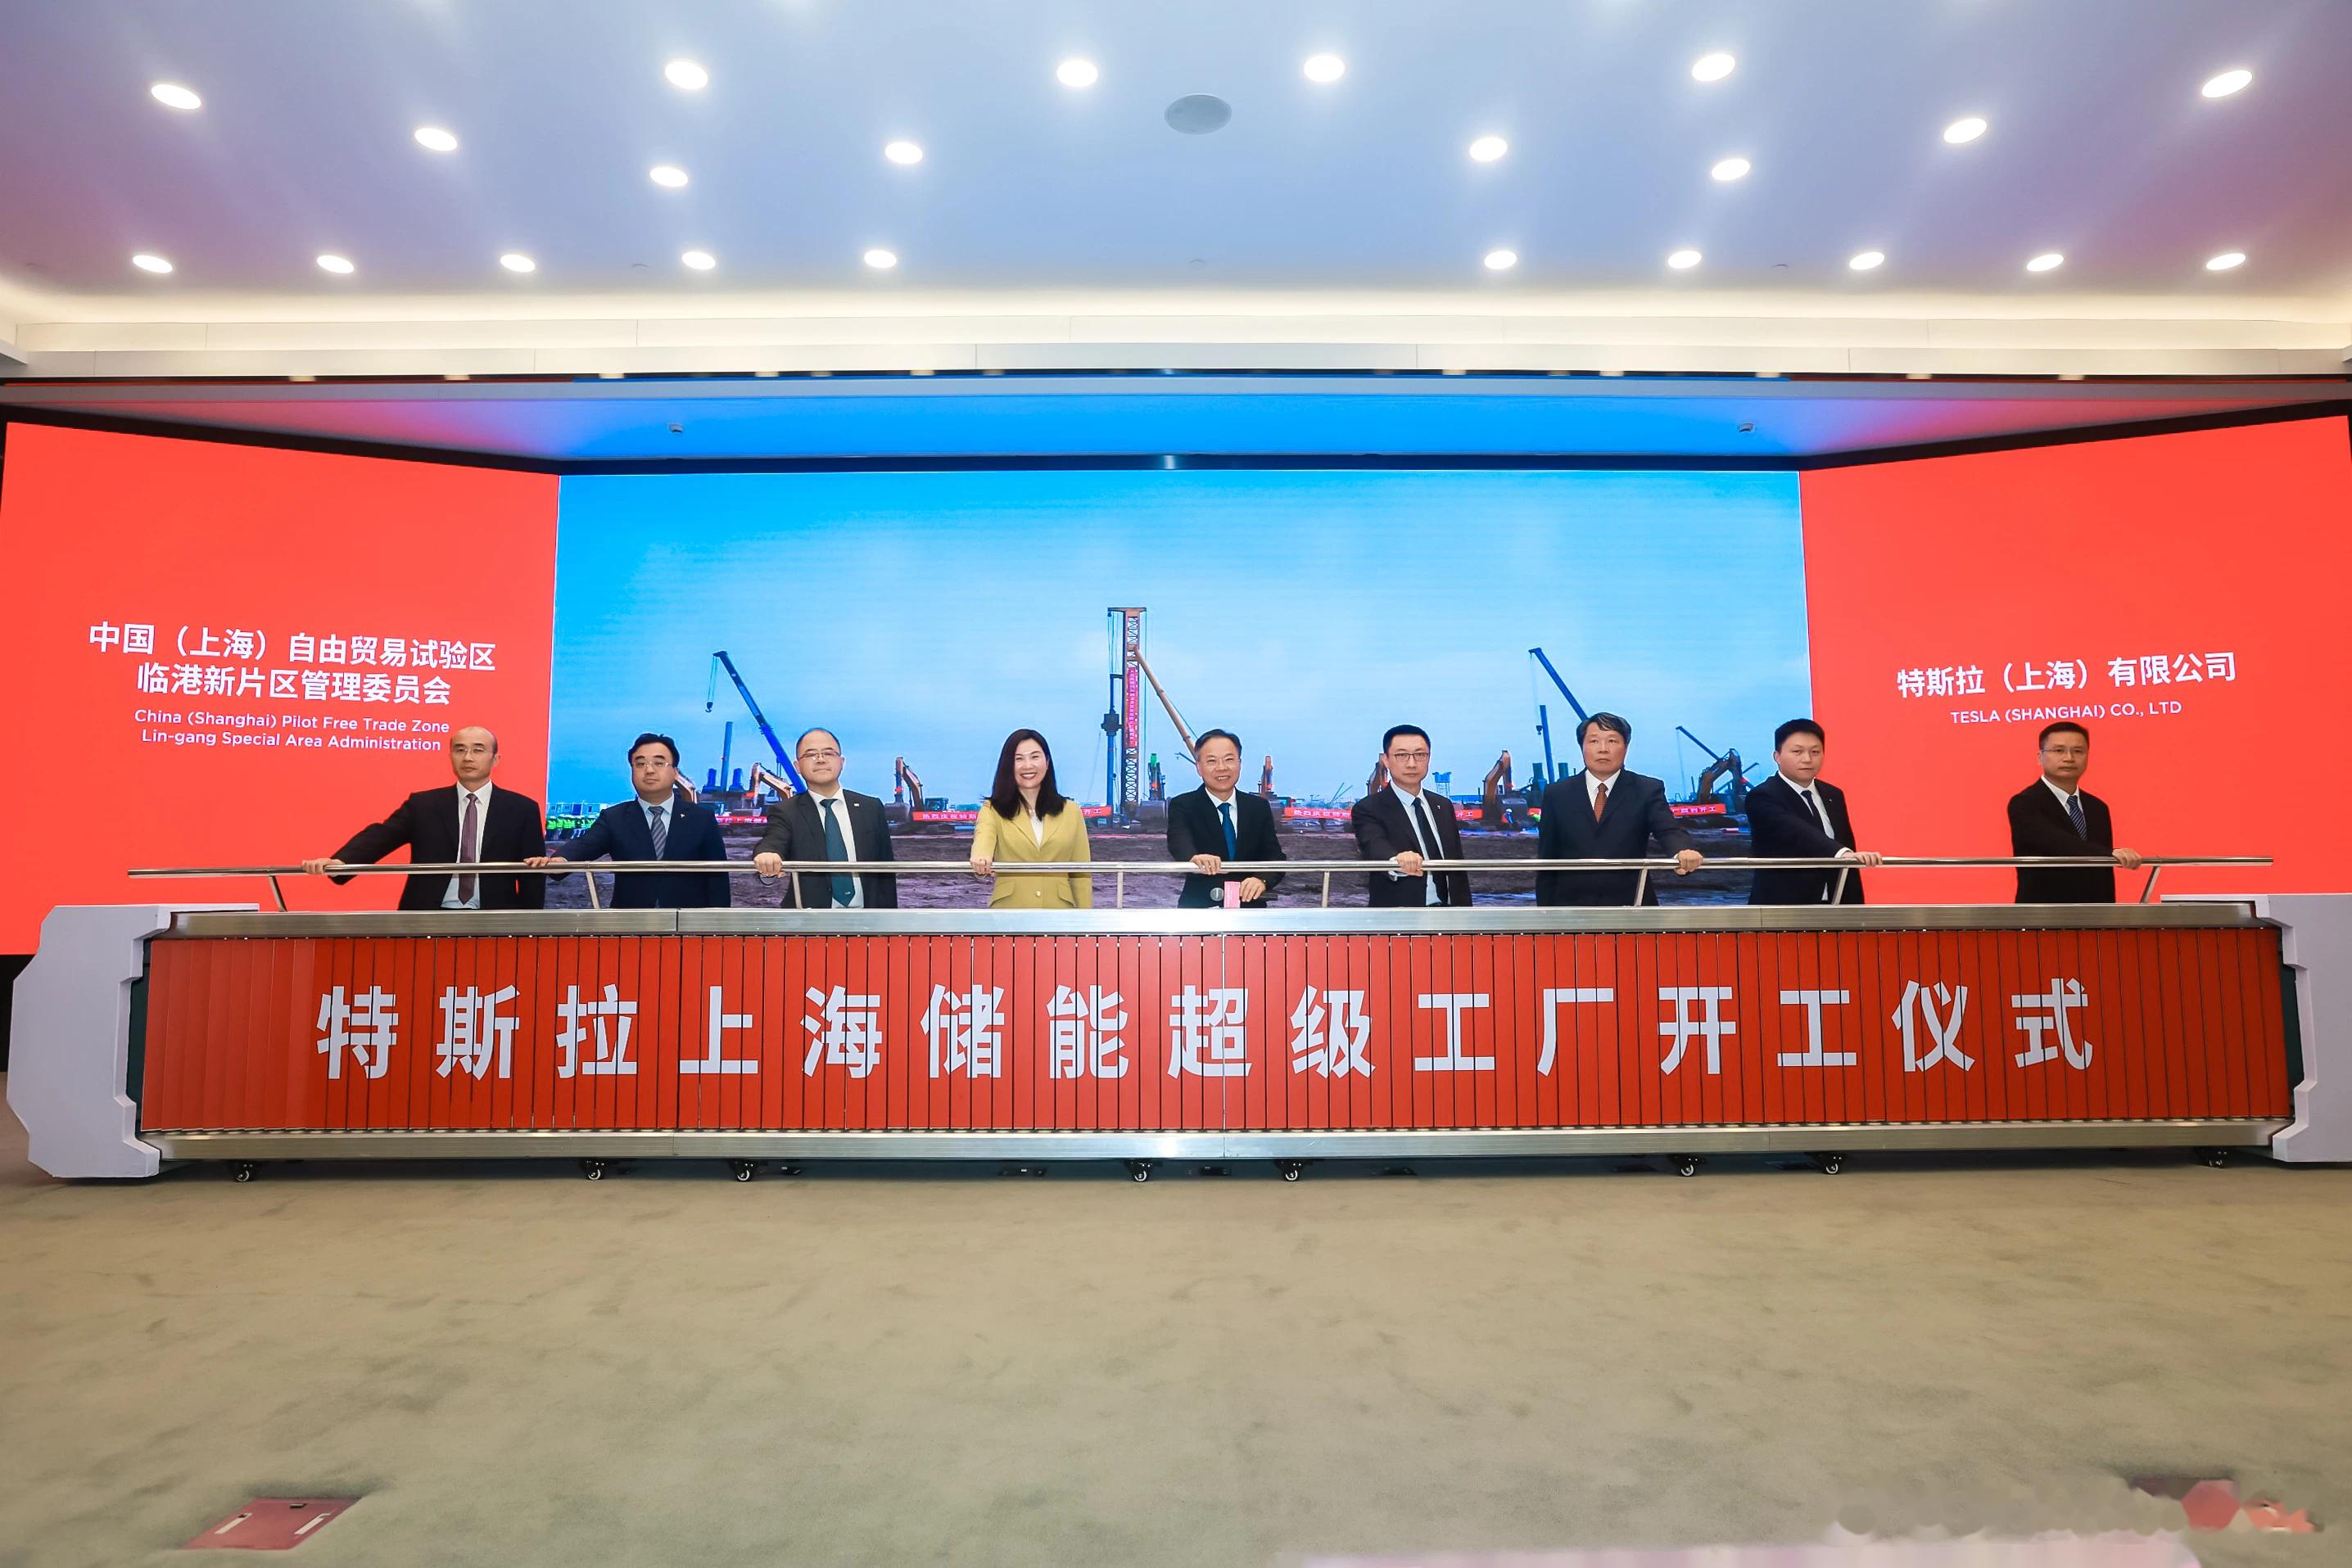 5月23日,特斯拉上海储能超级工厂正式开工这是特斯拉在美国本土以外的